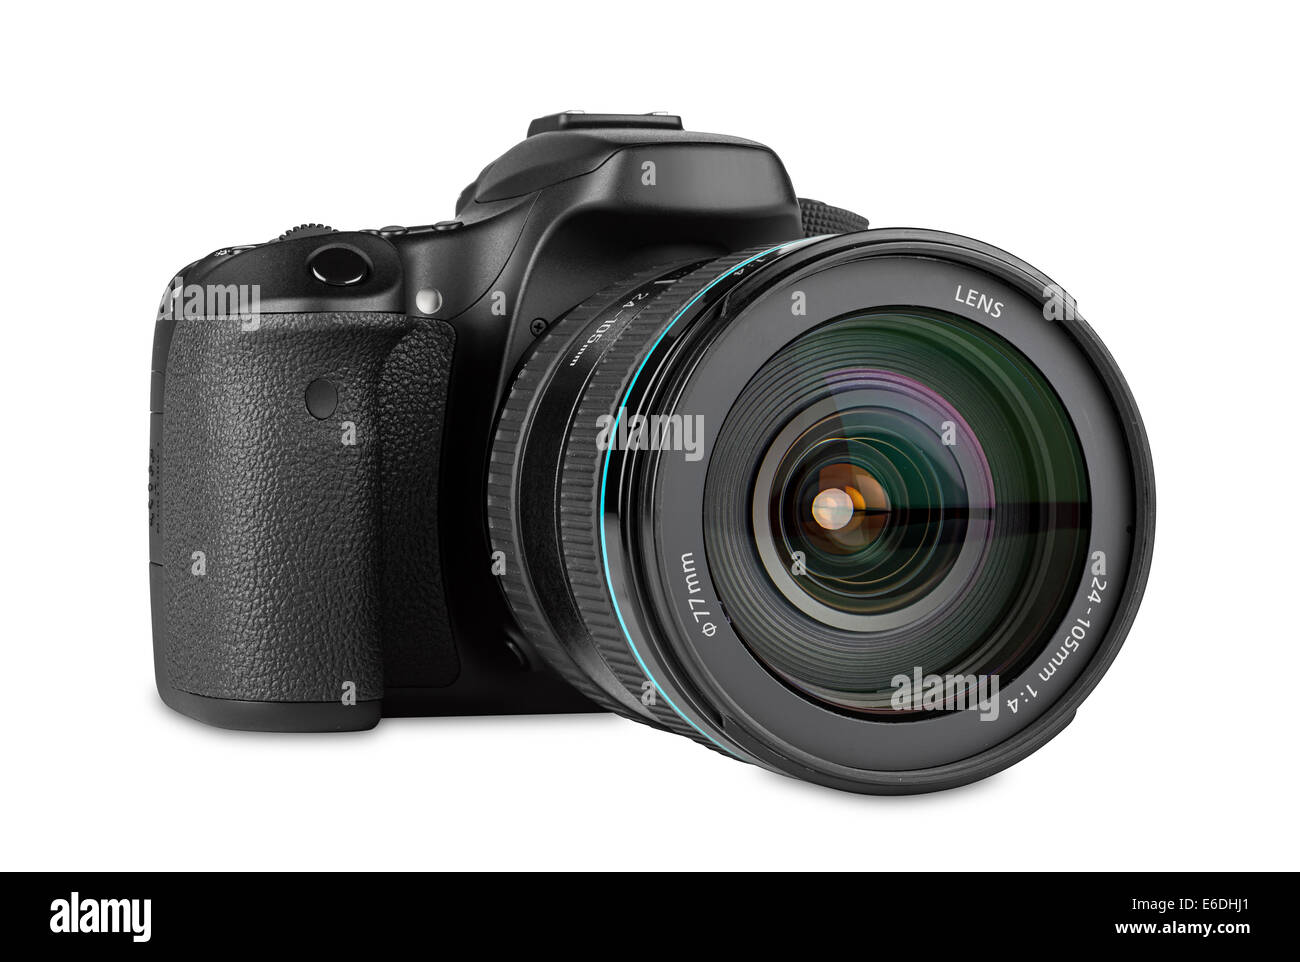 Fotocamera reflex digitale con obiettivo zoom montato Foto Stock